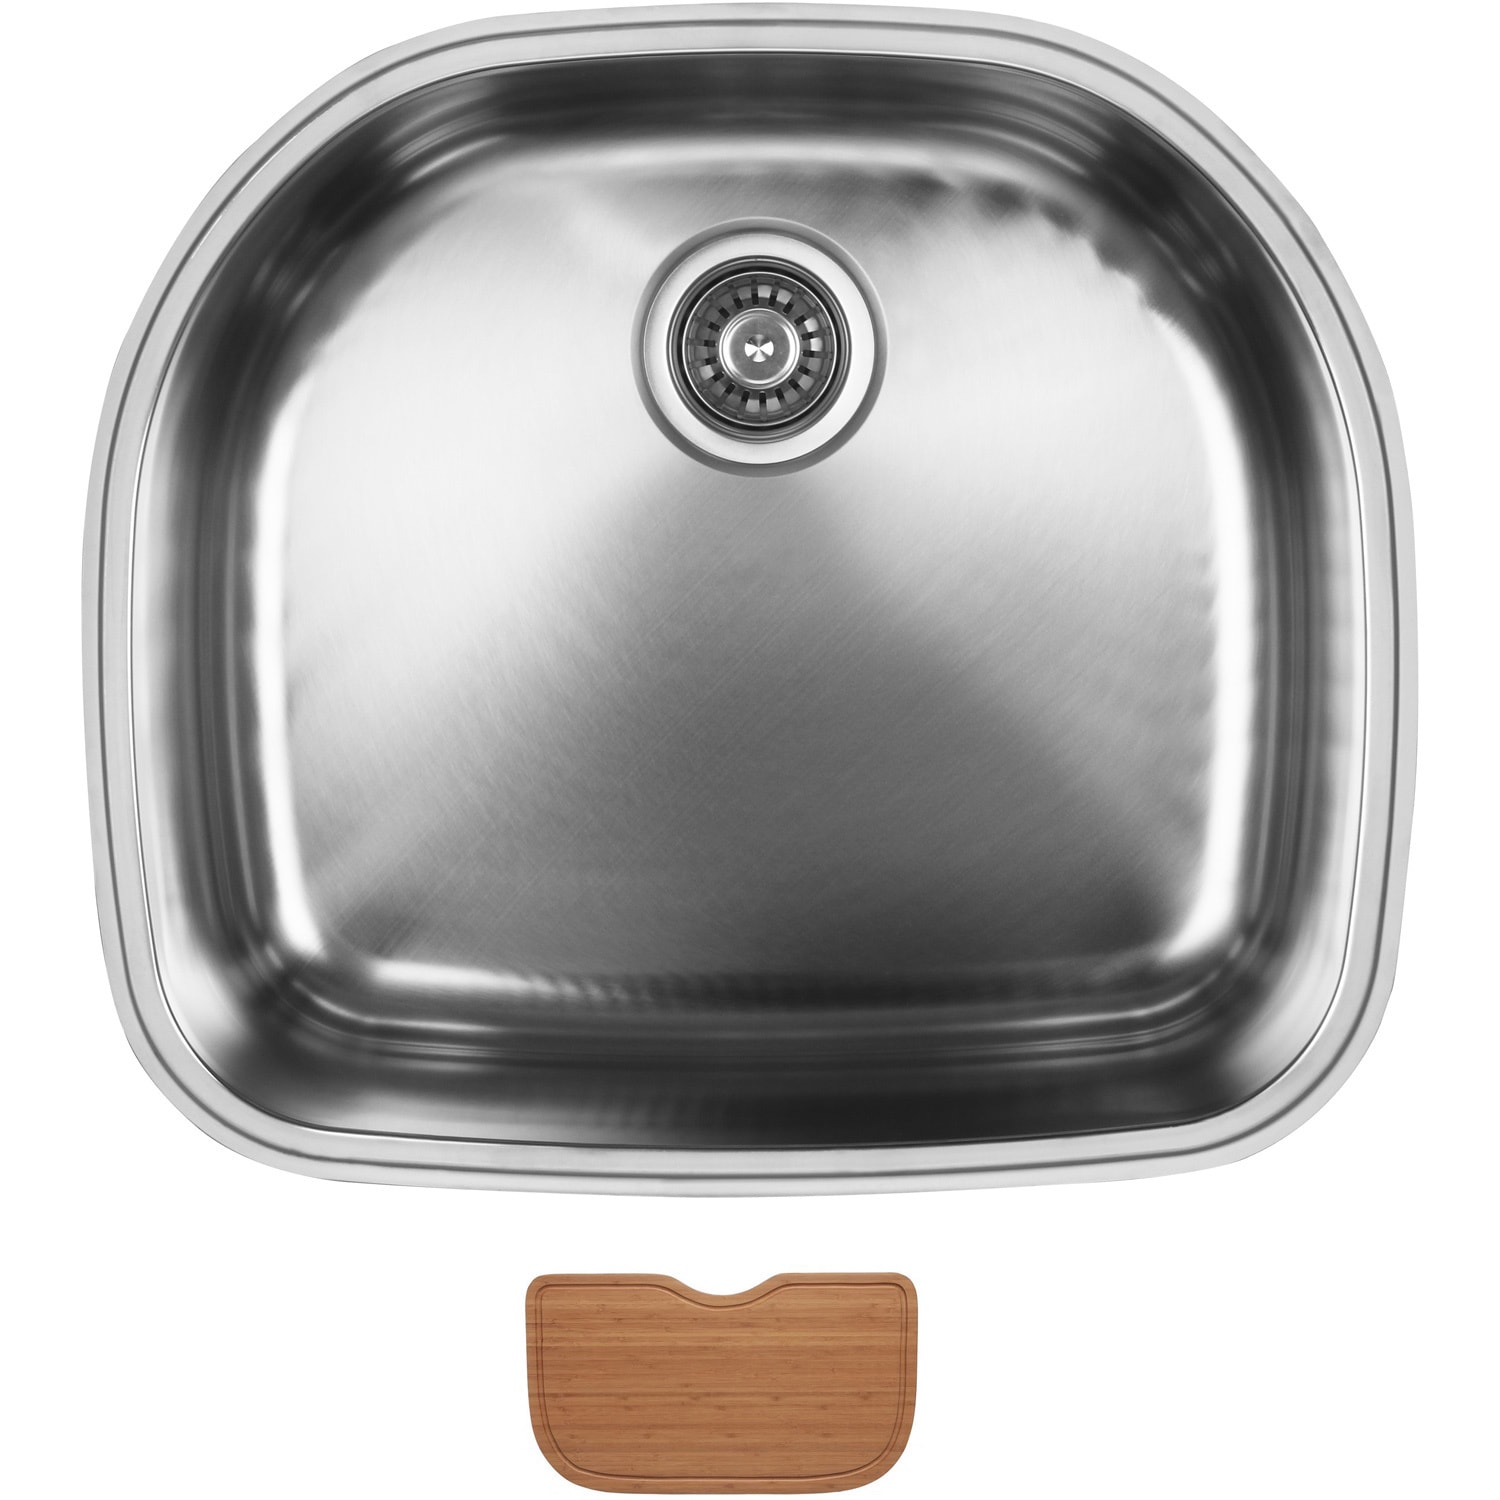 Ukinox D537 10 Single Basin Stainless Steel Undermount Kitchen Sink